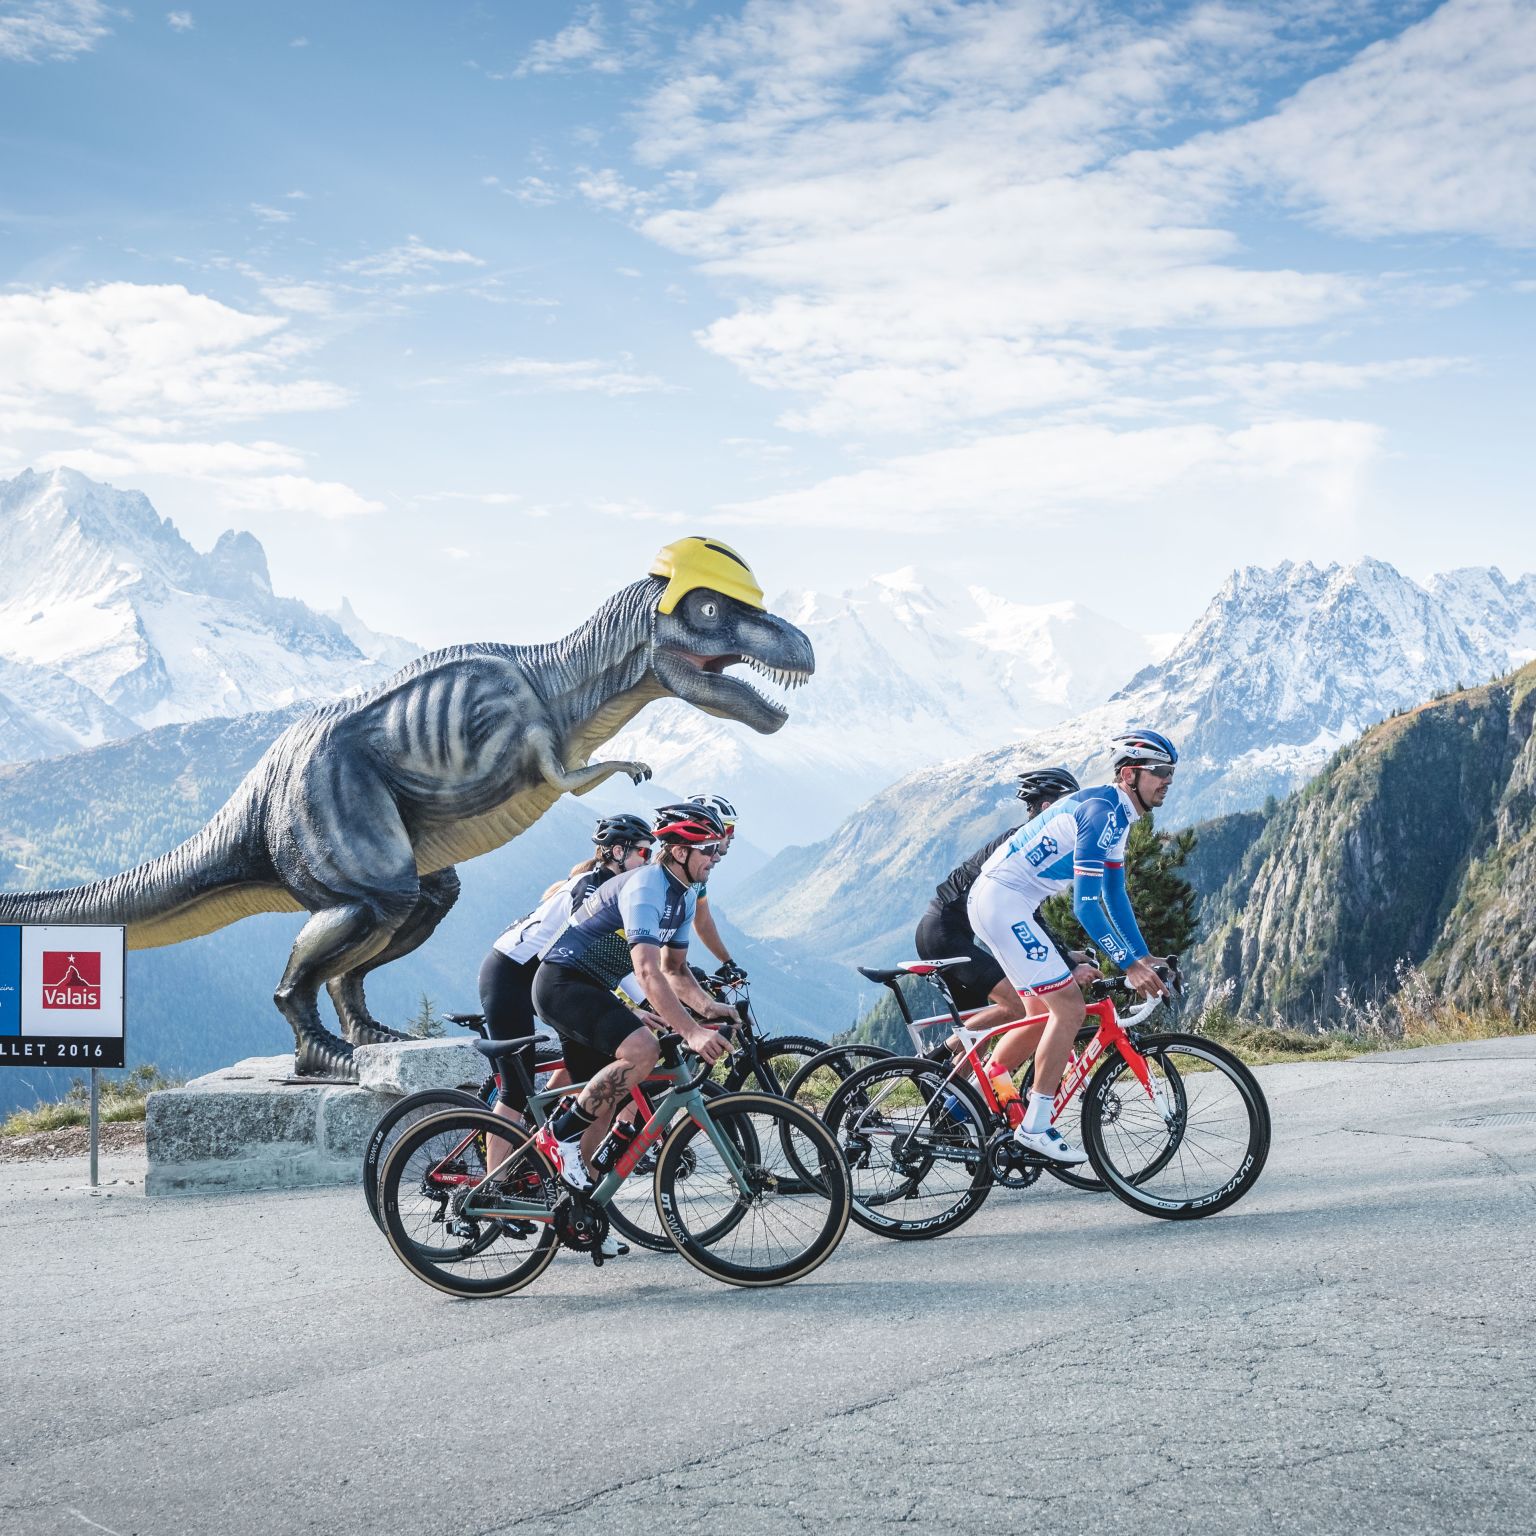 Sur les traces du Tour du France Velo dinosaure Montagnes Valais Wallis Schweiz Switzerland Suisse